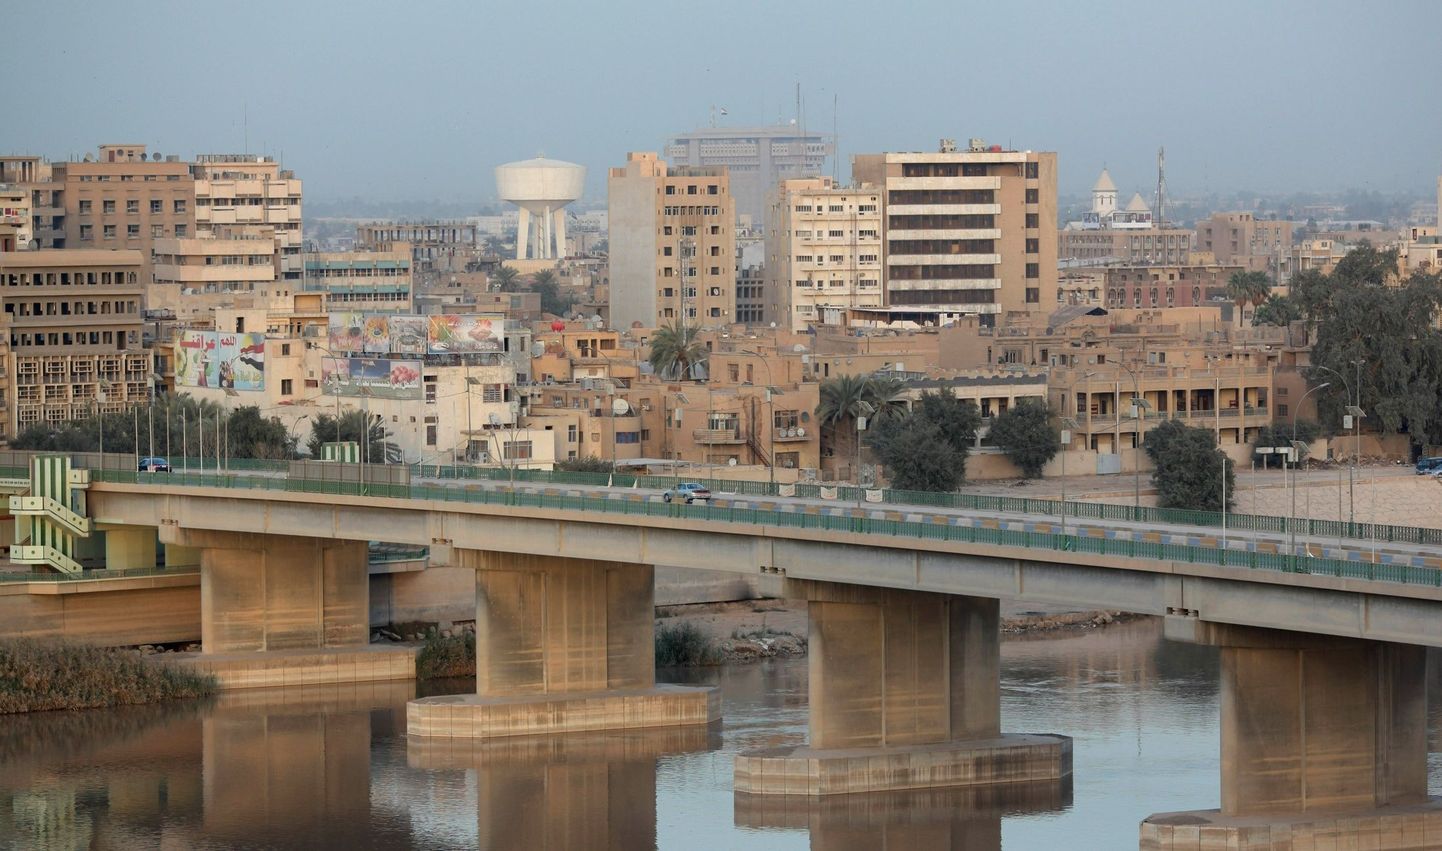 Tigrise jõgi Baghdadi keskel.